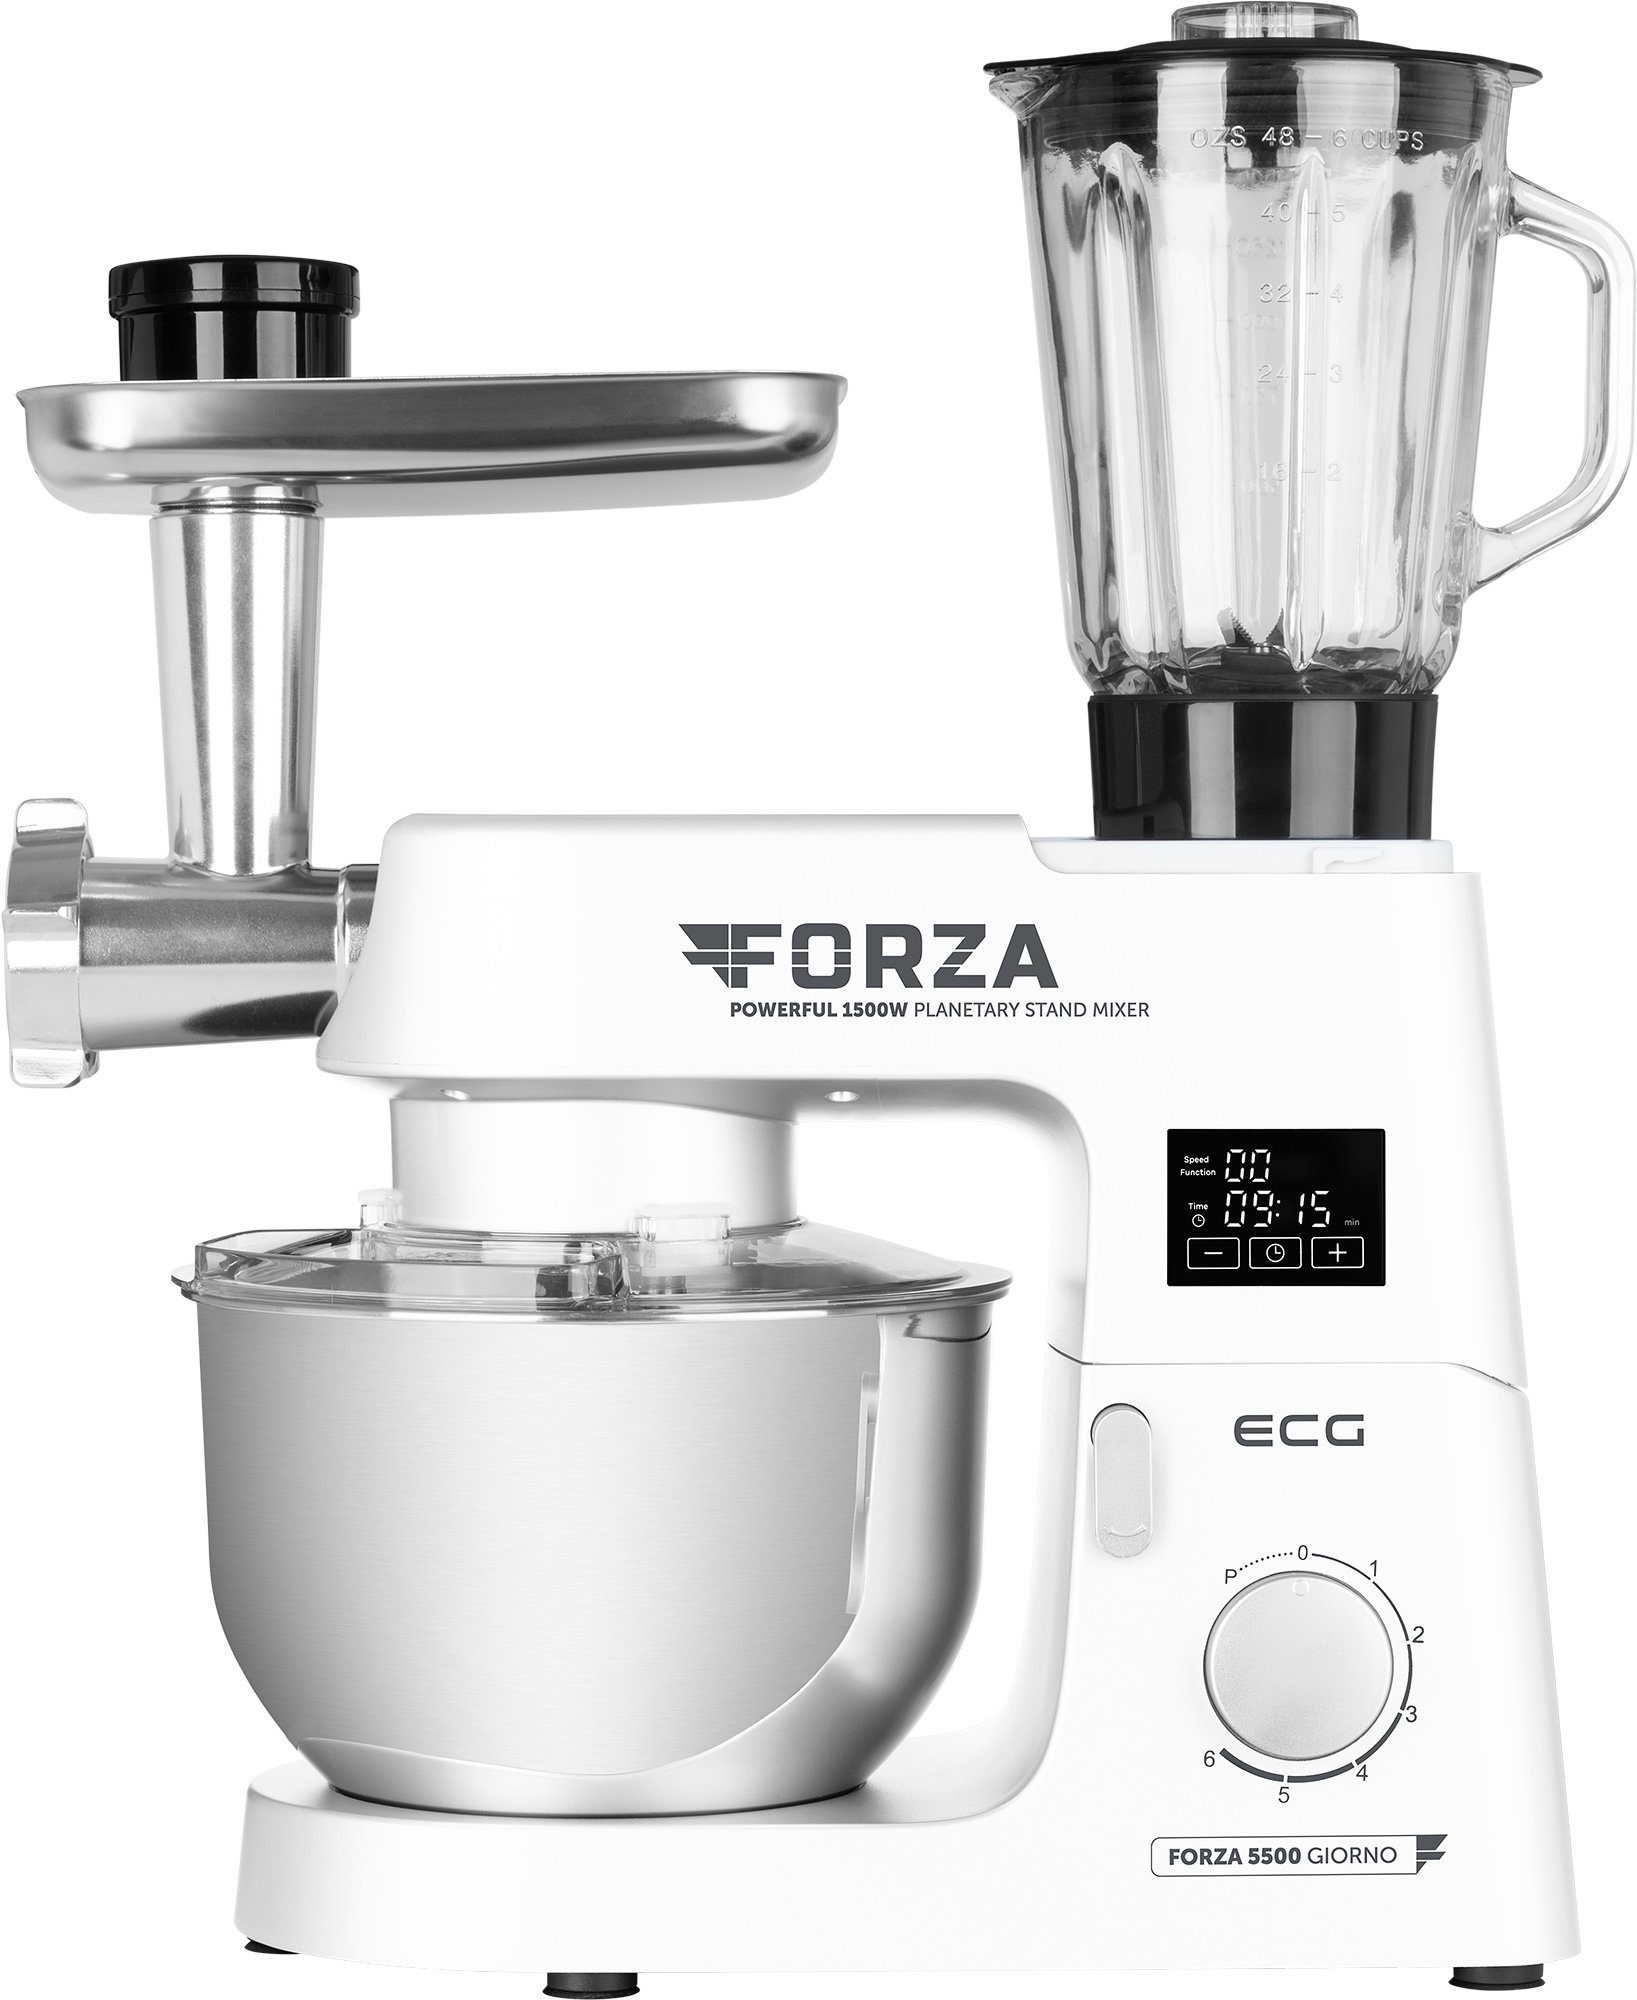 ECG Küchenmaschine FORZA 5500 Giorno Bianco, 1500 W, 6,50 l Schüssel, Große Auswahl an Zubehör | Multifunktionsküchenmaschinen